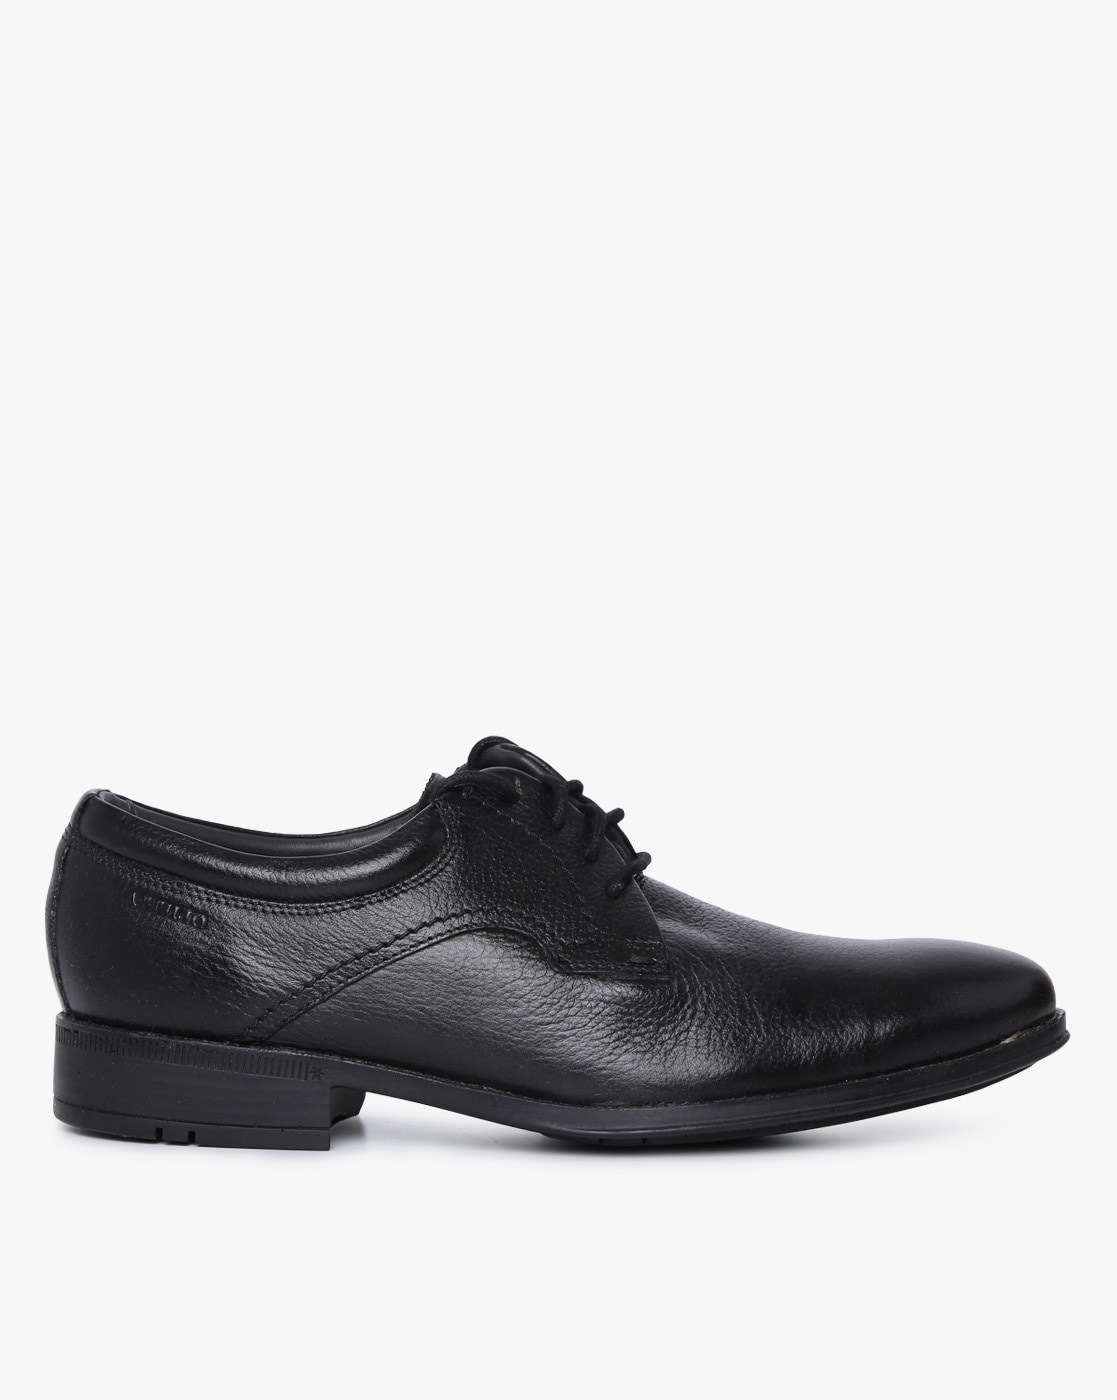 derby formal shoes online